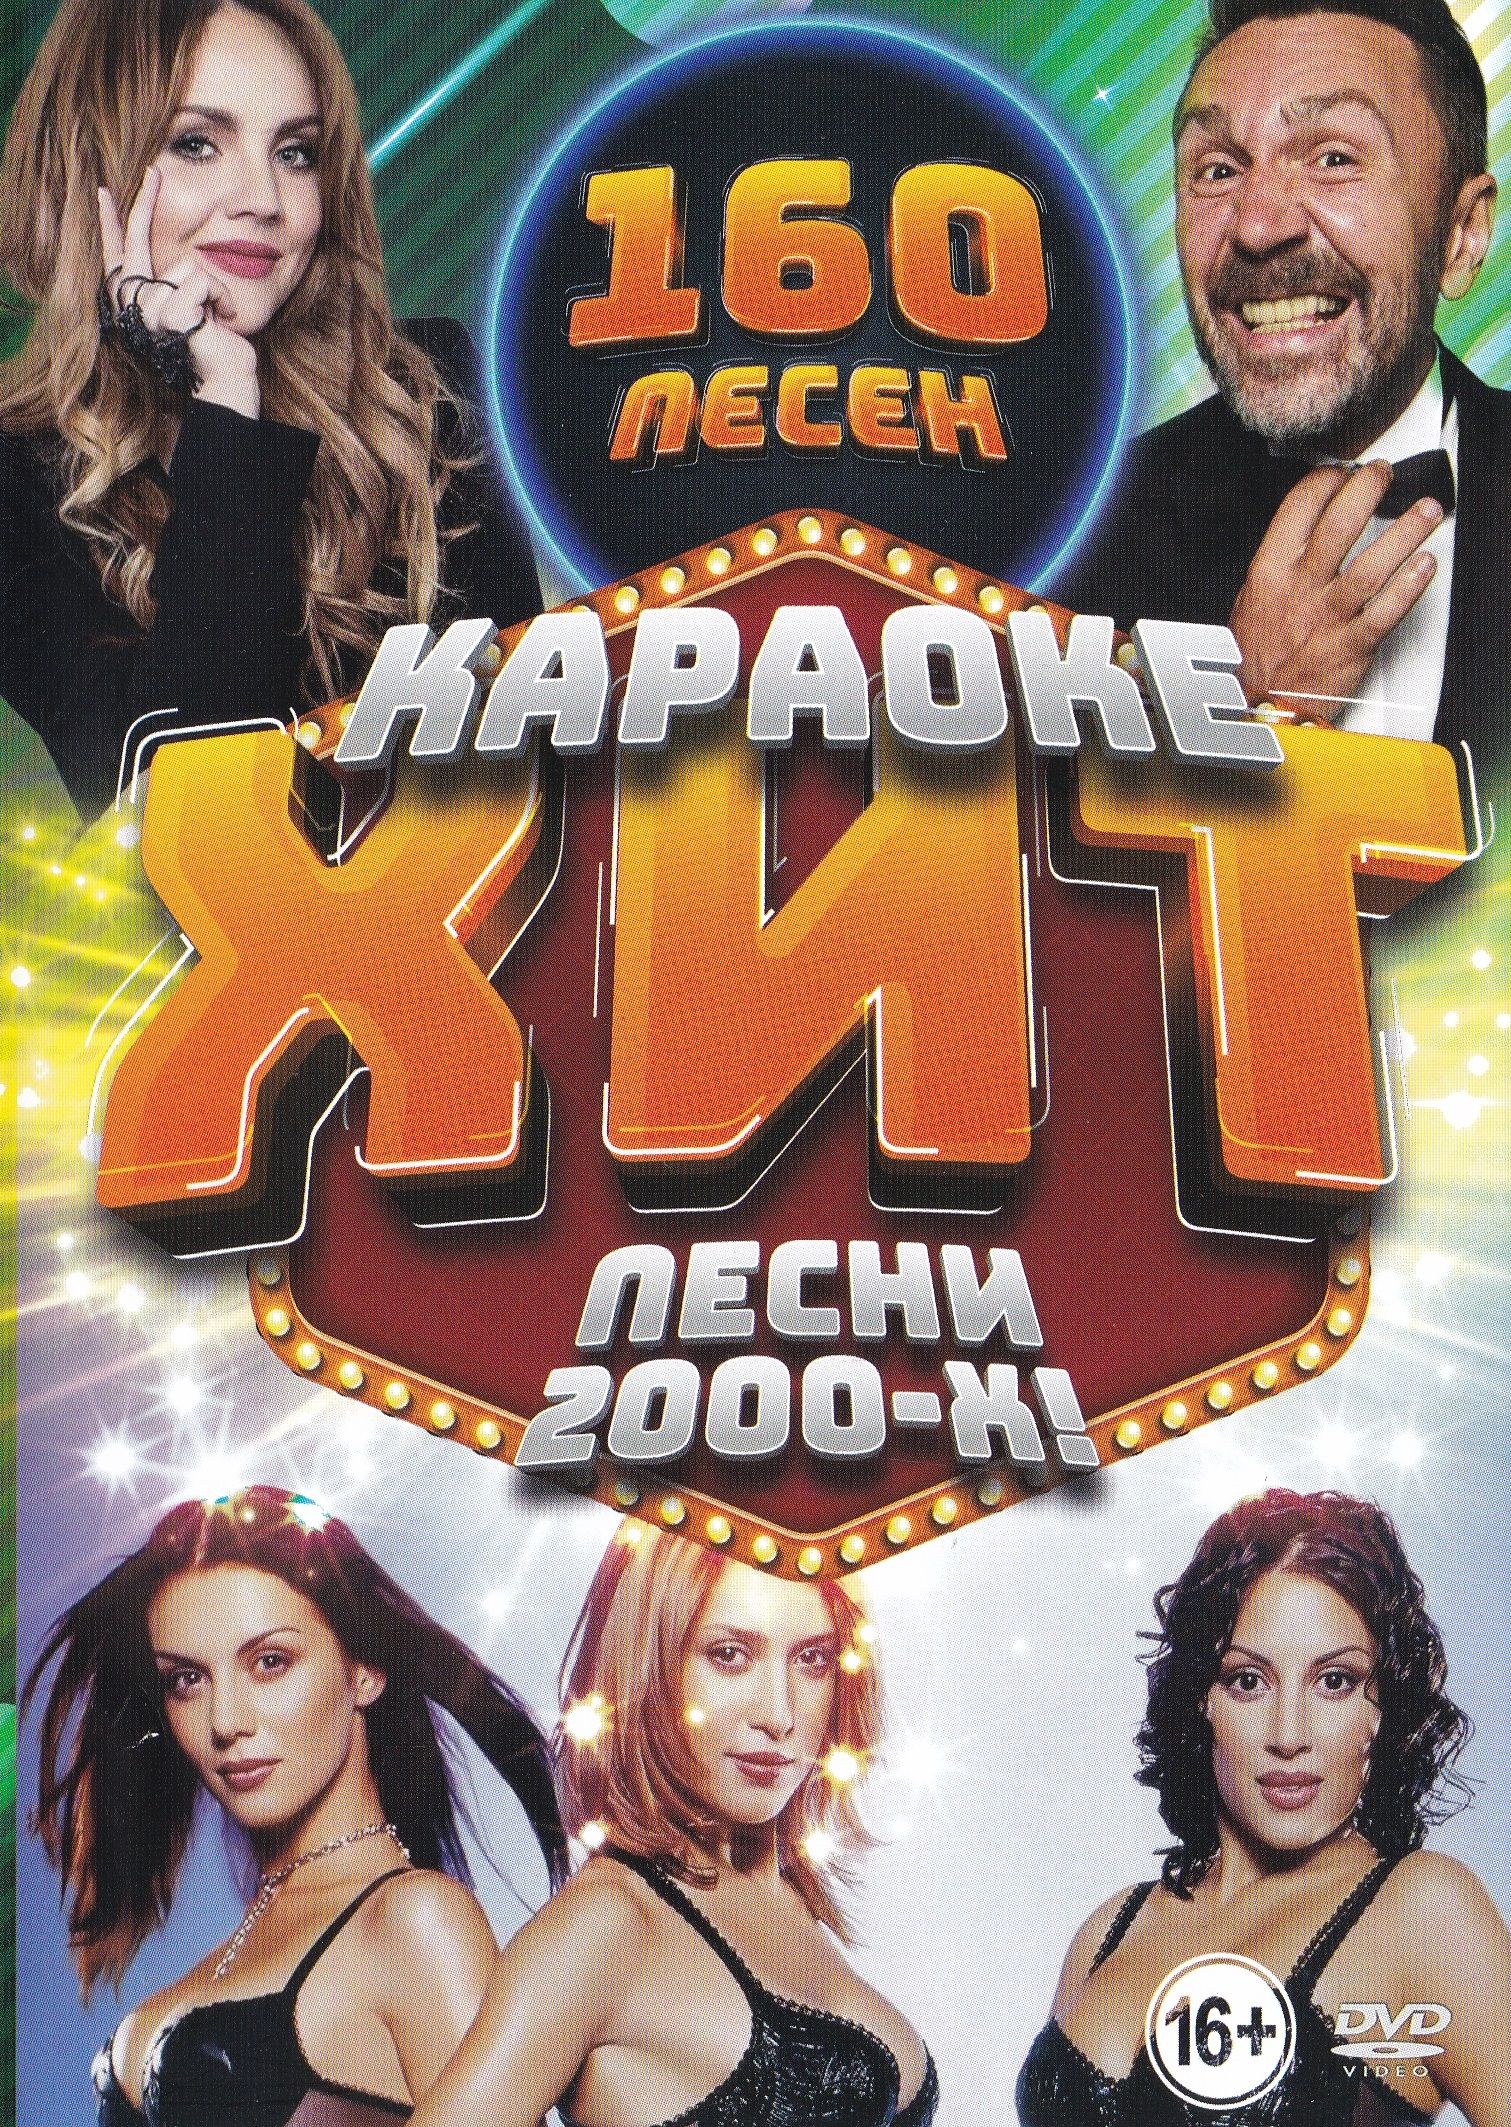 Хиты лучшие песни 2000 года. Karaoke 2000 х DVD. Диск хиты 2000. Песни-2000-х. Диск песен 2000х.